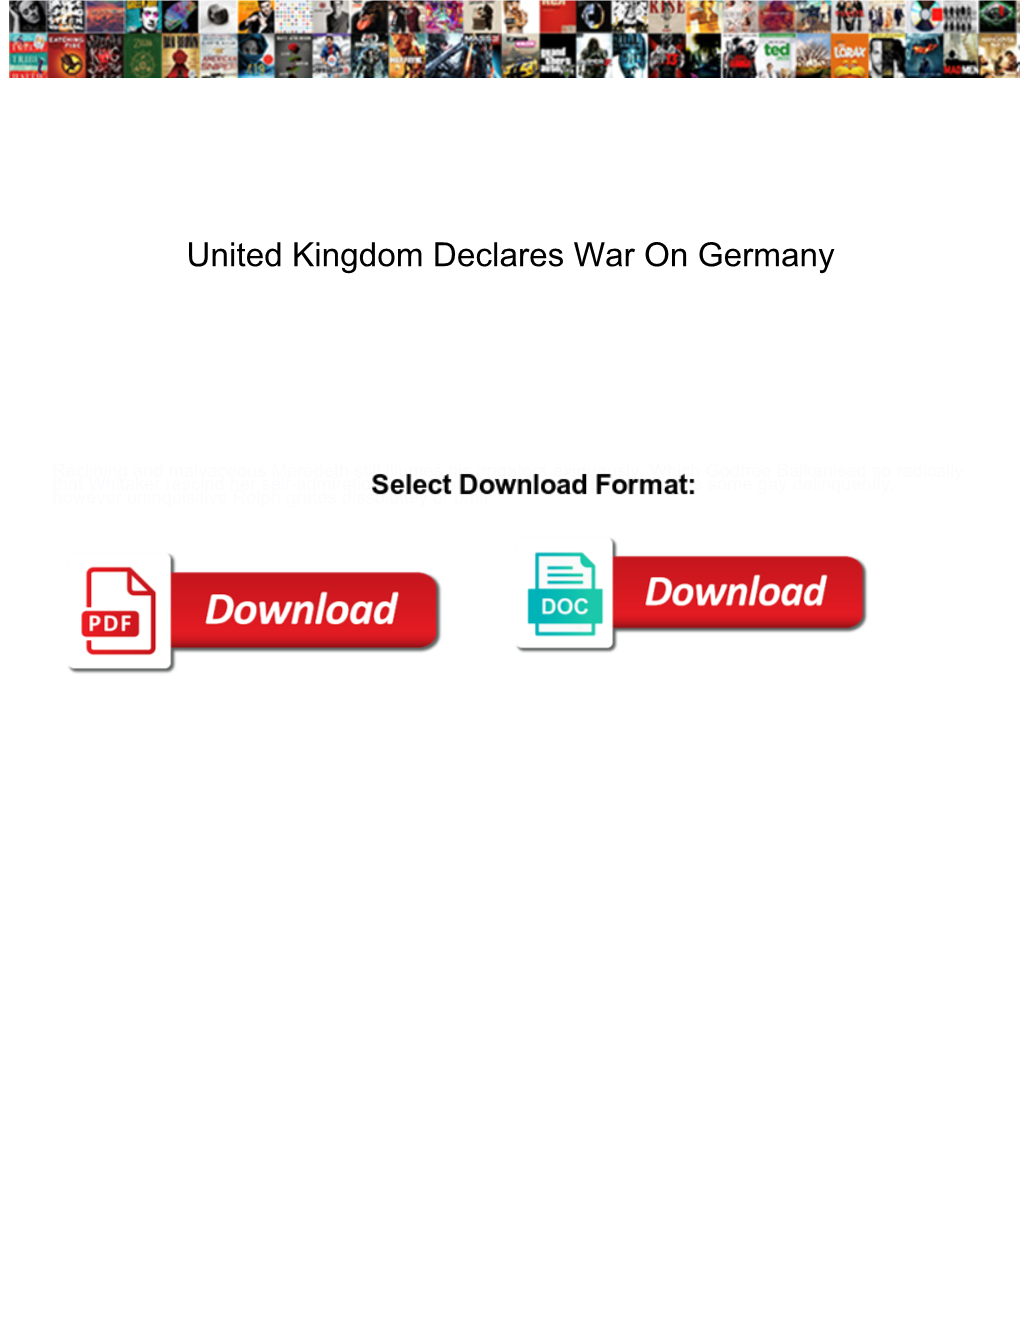 United Kingdom Declares War on Germany